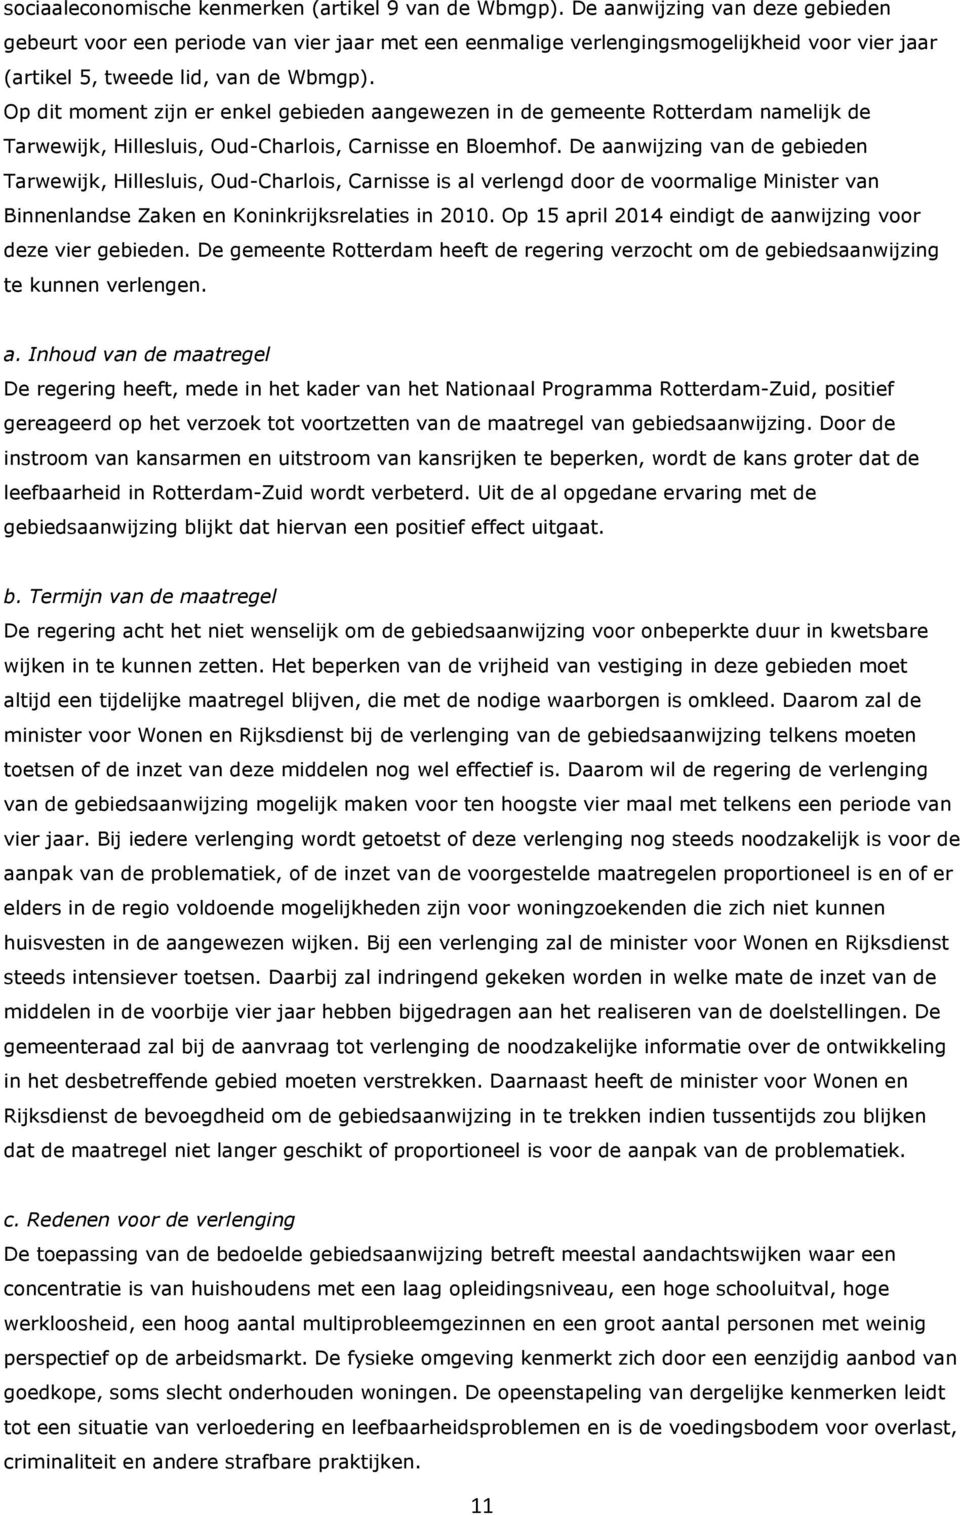 Op dit moment zijn er enkel gebieden aangewezen in de gemeente Rotterdam namelijk de Tarwewijk, Hillesluis, Oud-Charlois, Carnisse en Bloemhof.